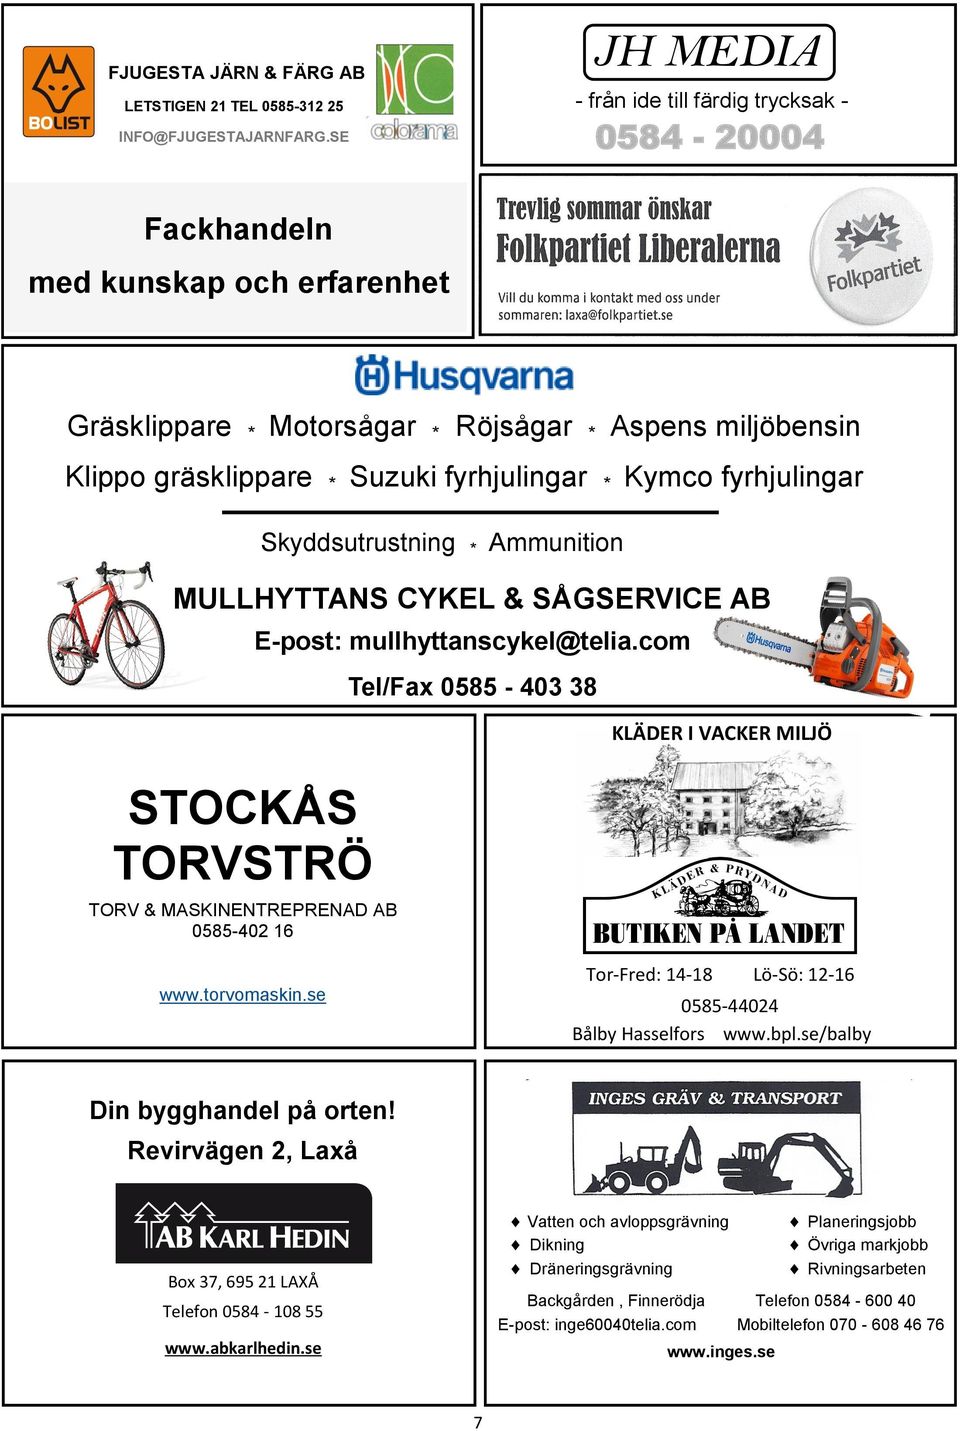 Kymco fyrhjulingar STOCKÅS TORVSTRÖ TORV & MASKINENTREPRENAD AB 0585-402 16 Skyddsutrustning * Ammunition MULLHYTTANS CYKEL & SÅGSERVICE AB E-post: mullhyttanscykel@telia.